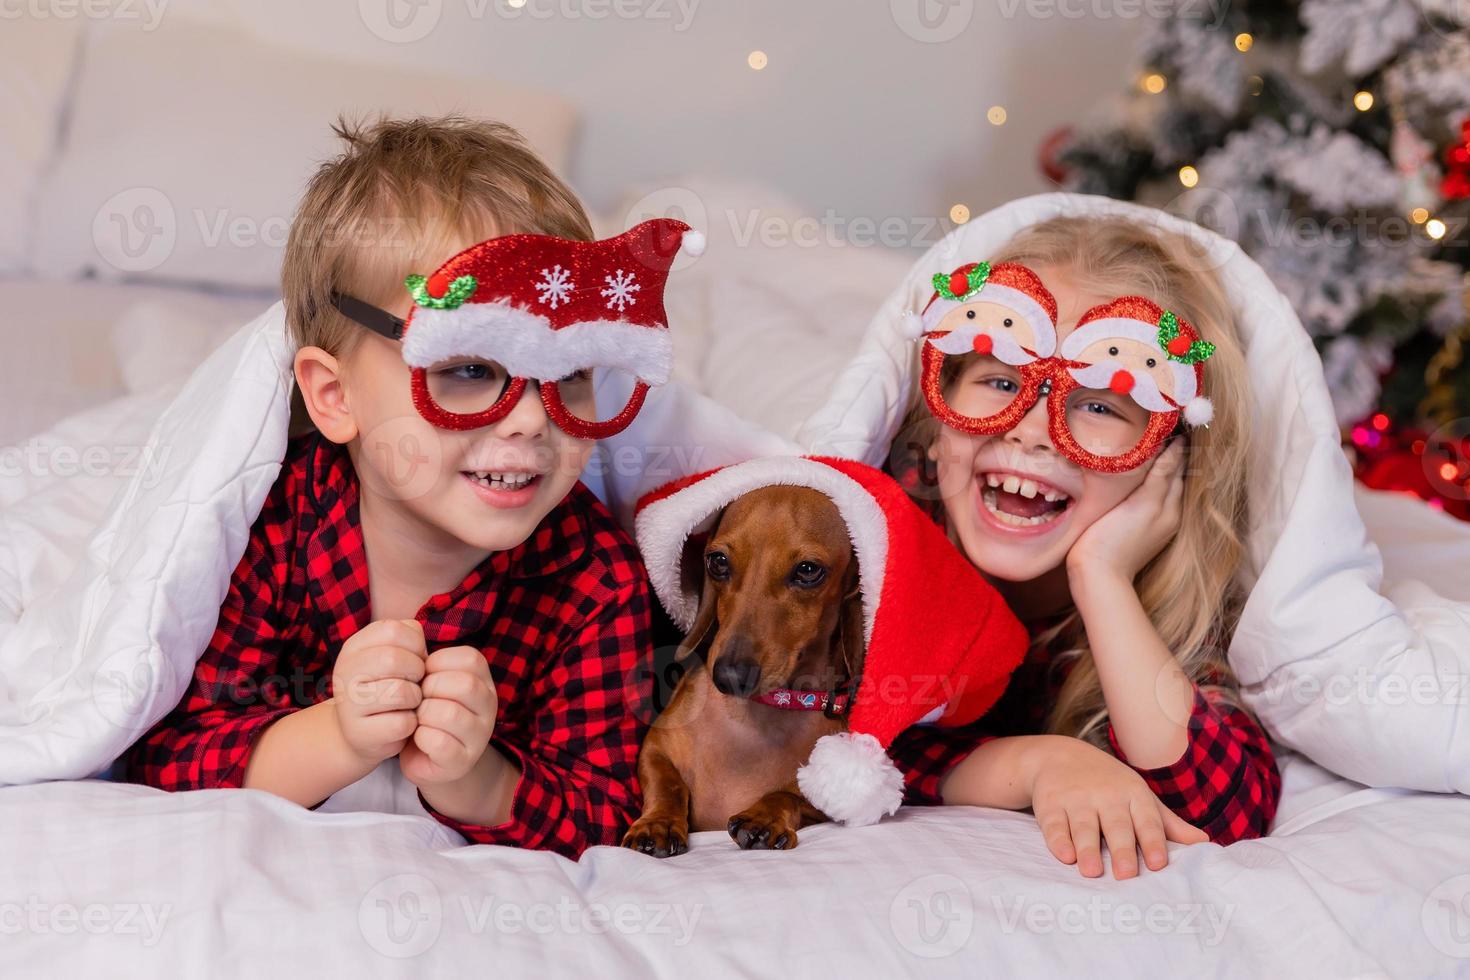 deux enfants un garçon et une fille sont allongés dans le lit avec leur animal de compagnie bien-aimé pour noël. photo de haute qualité